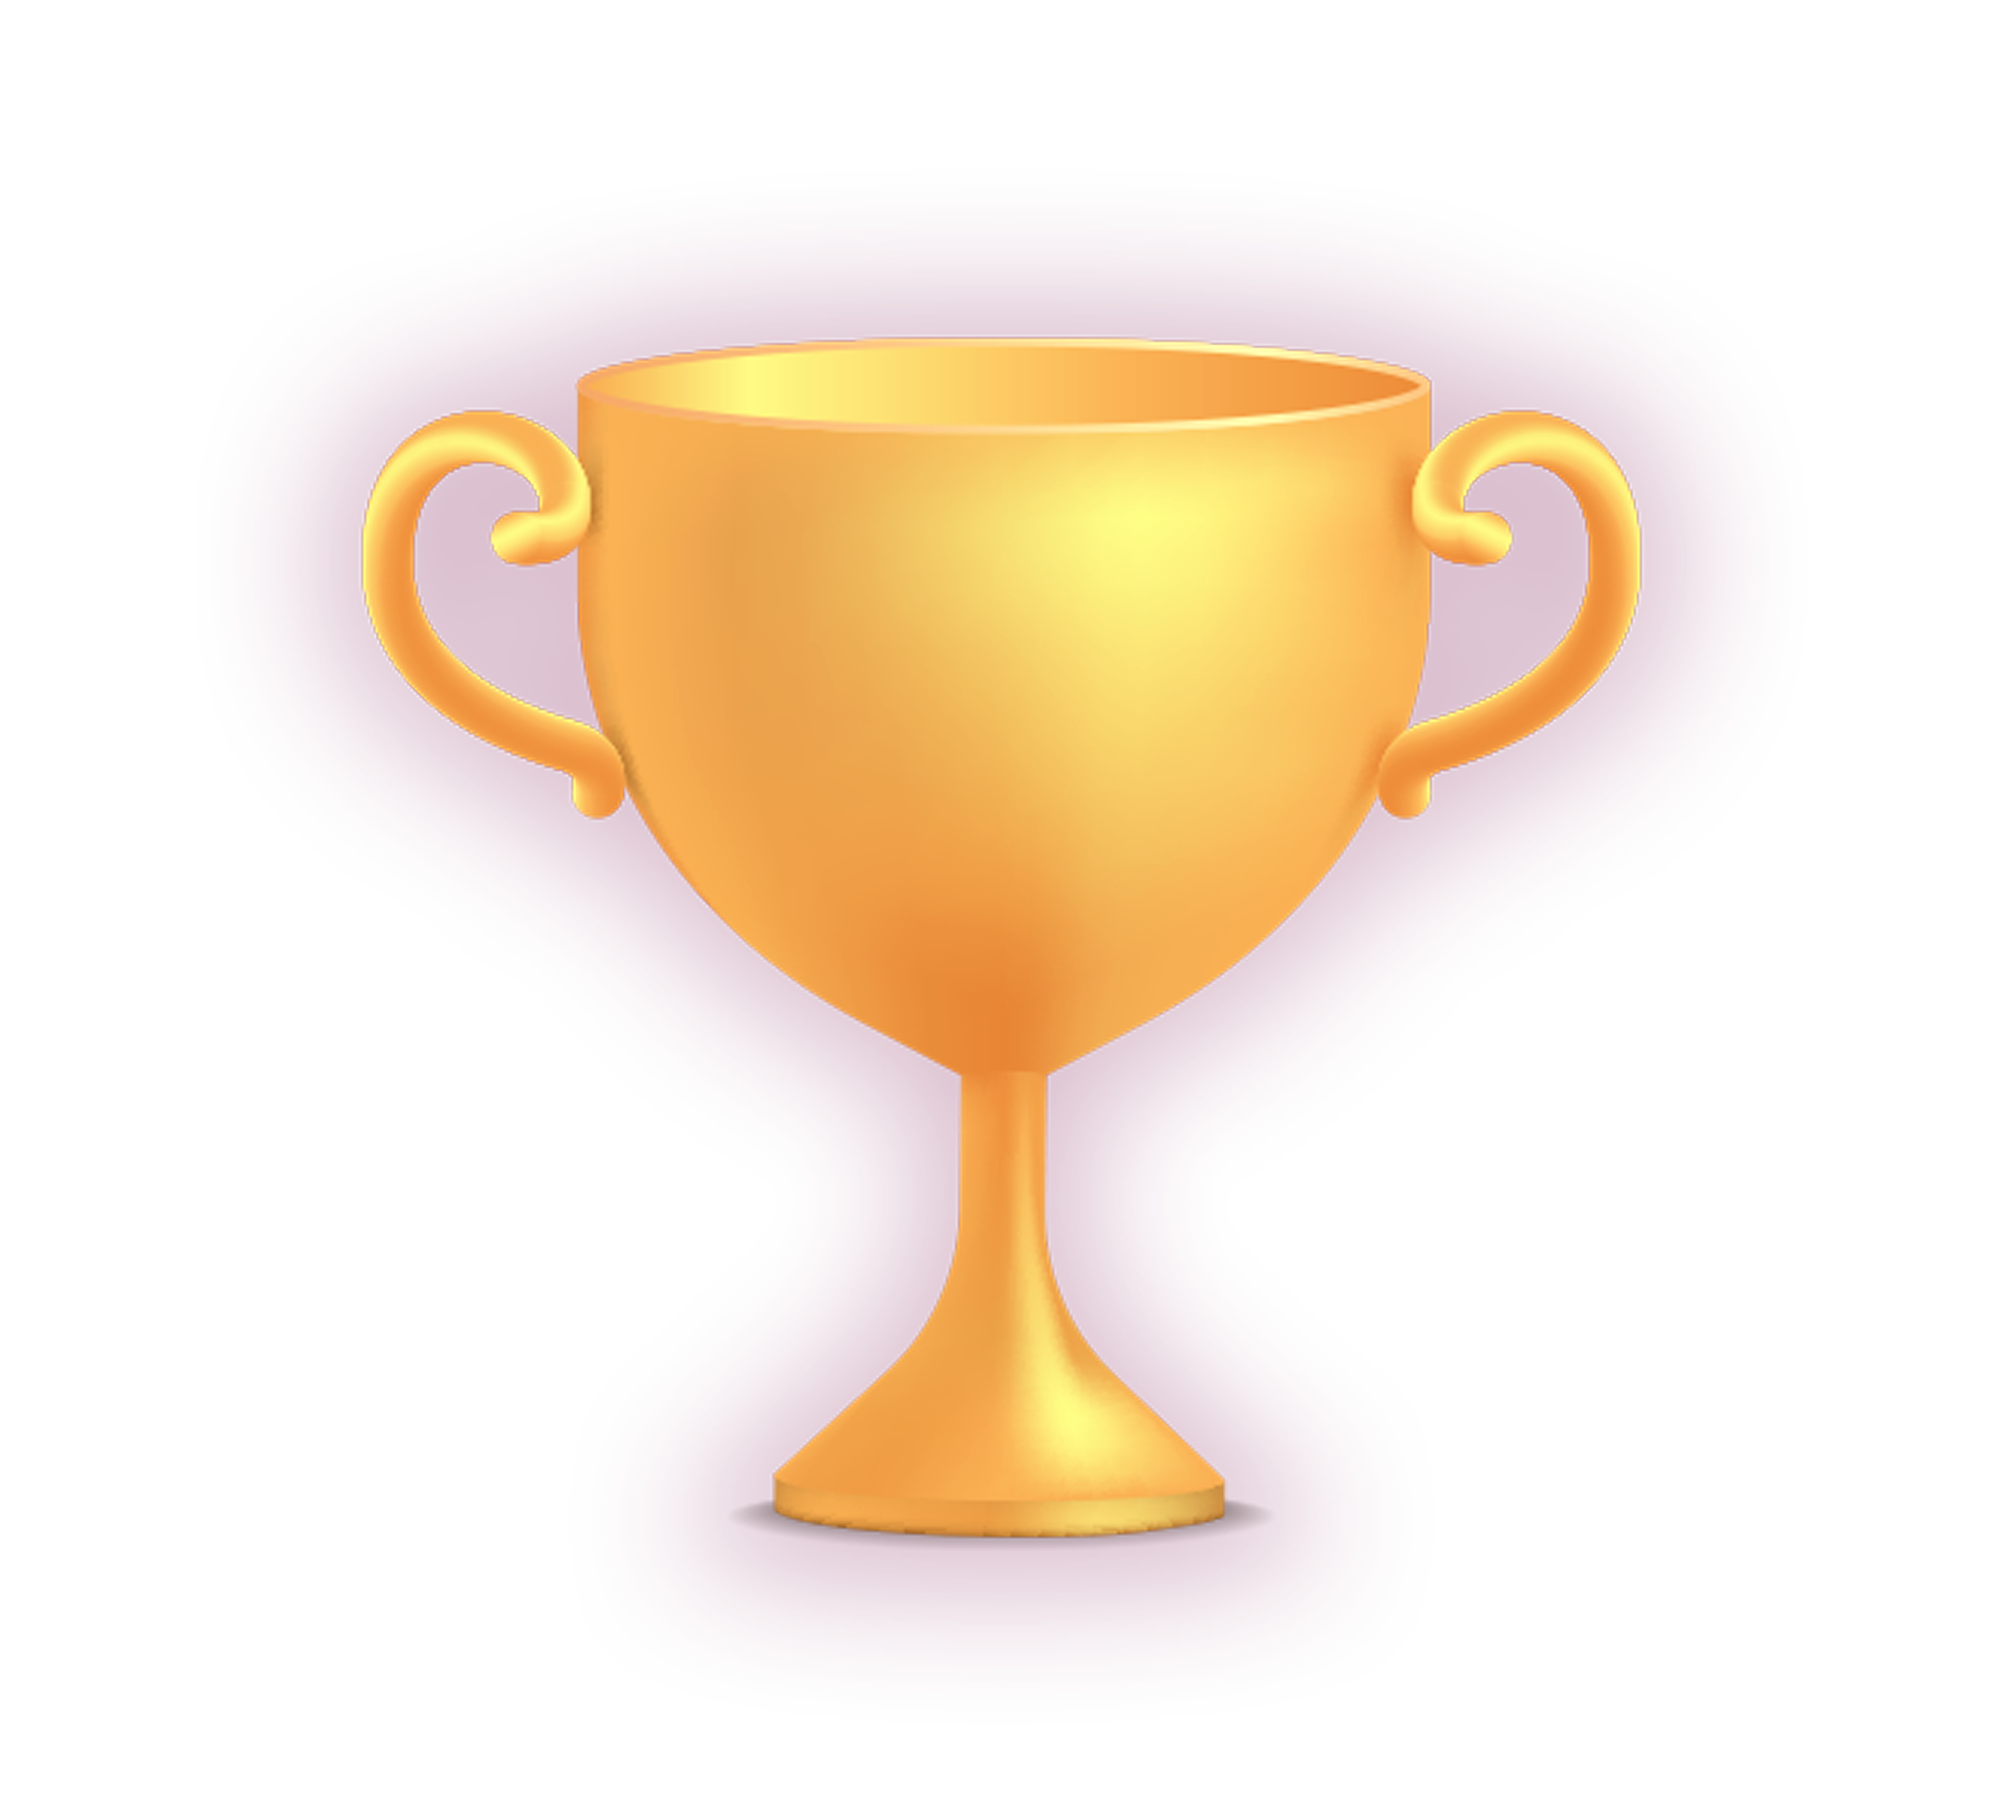 trophy image